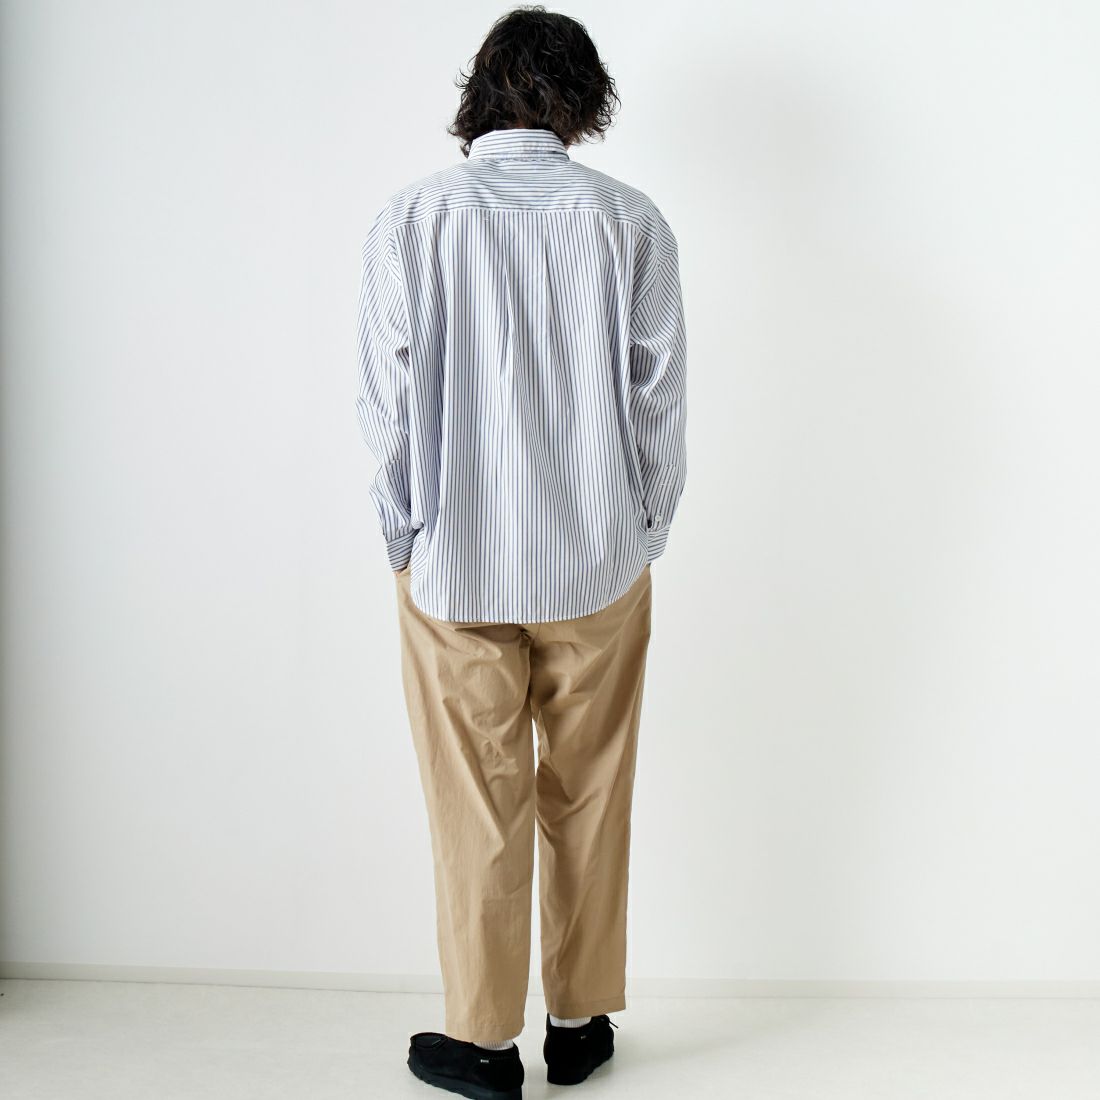 Jeans Factory Clothes [ジーンズファクトリークローズ] ビッグボタンダウンシャツ [JFC-241-014] B ST.WHT &&モデル身長：182cm 着用サイズ：L&&